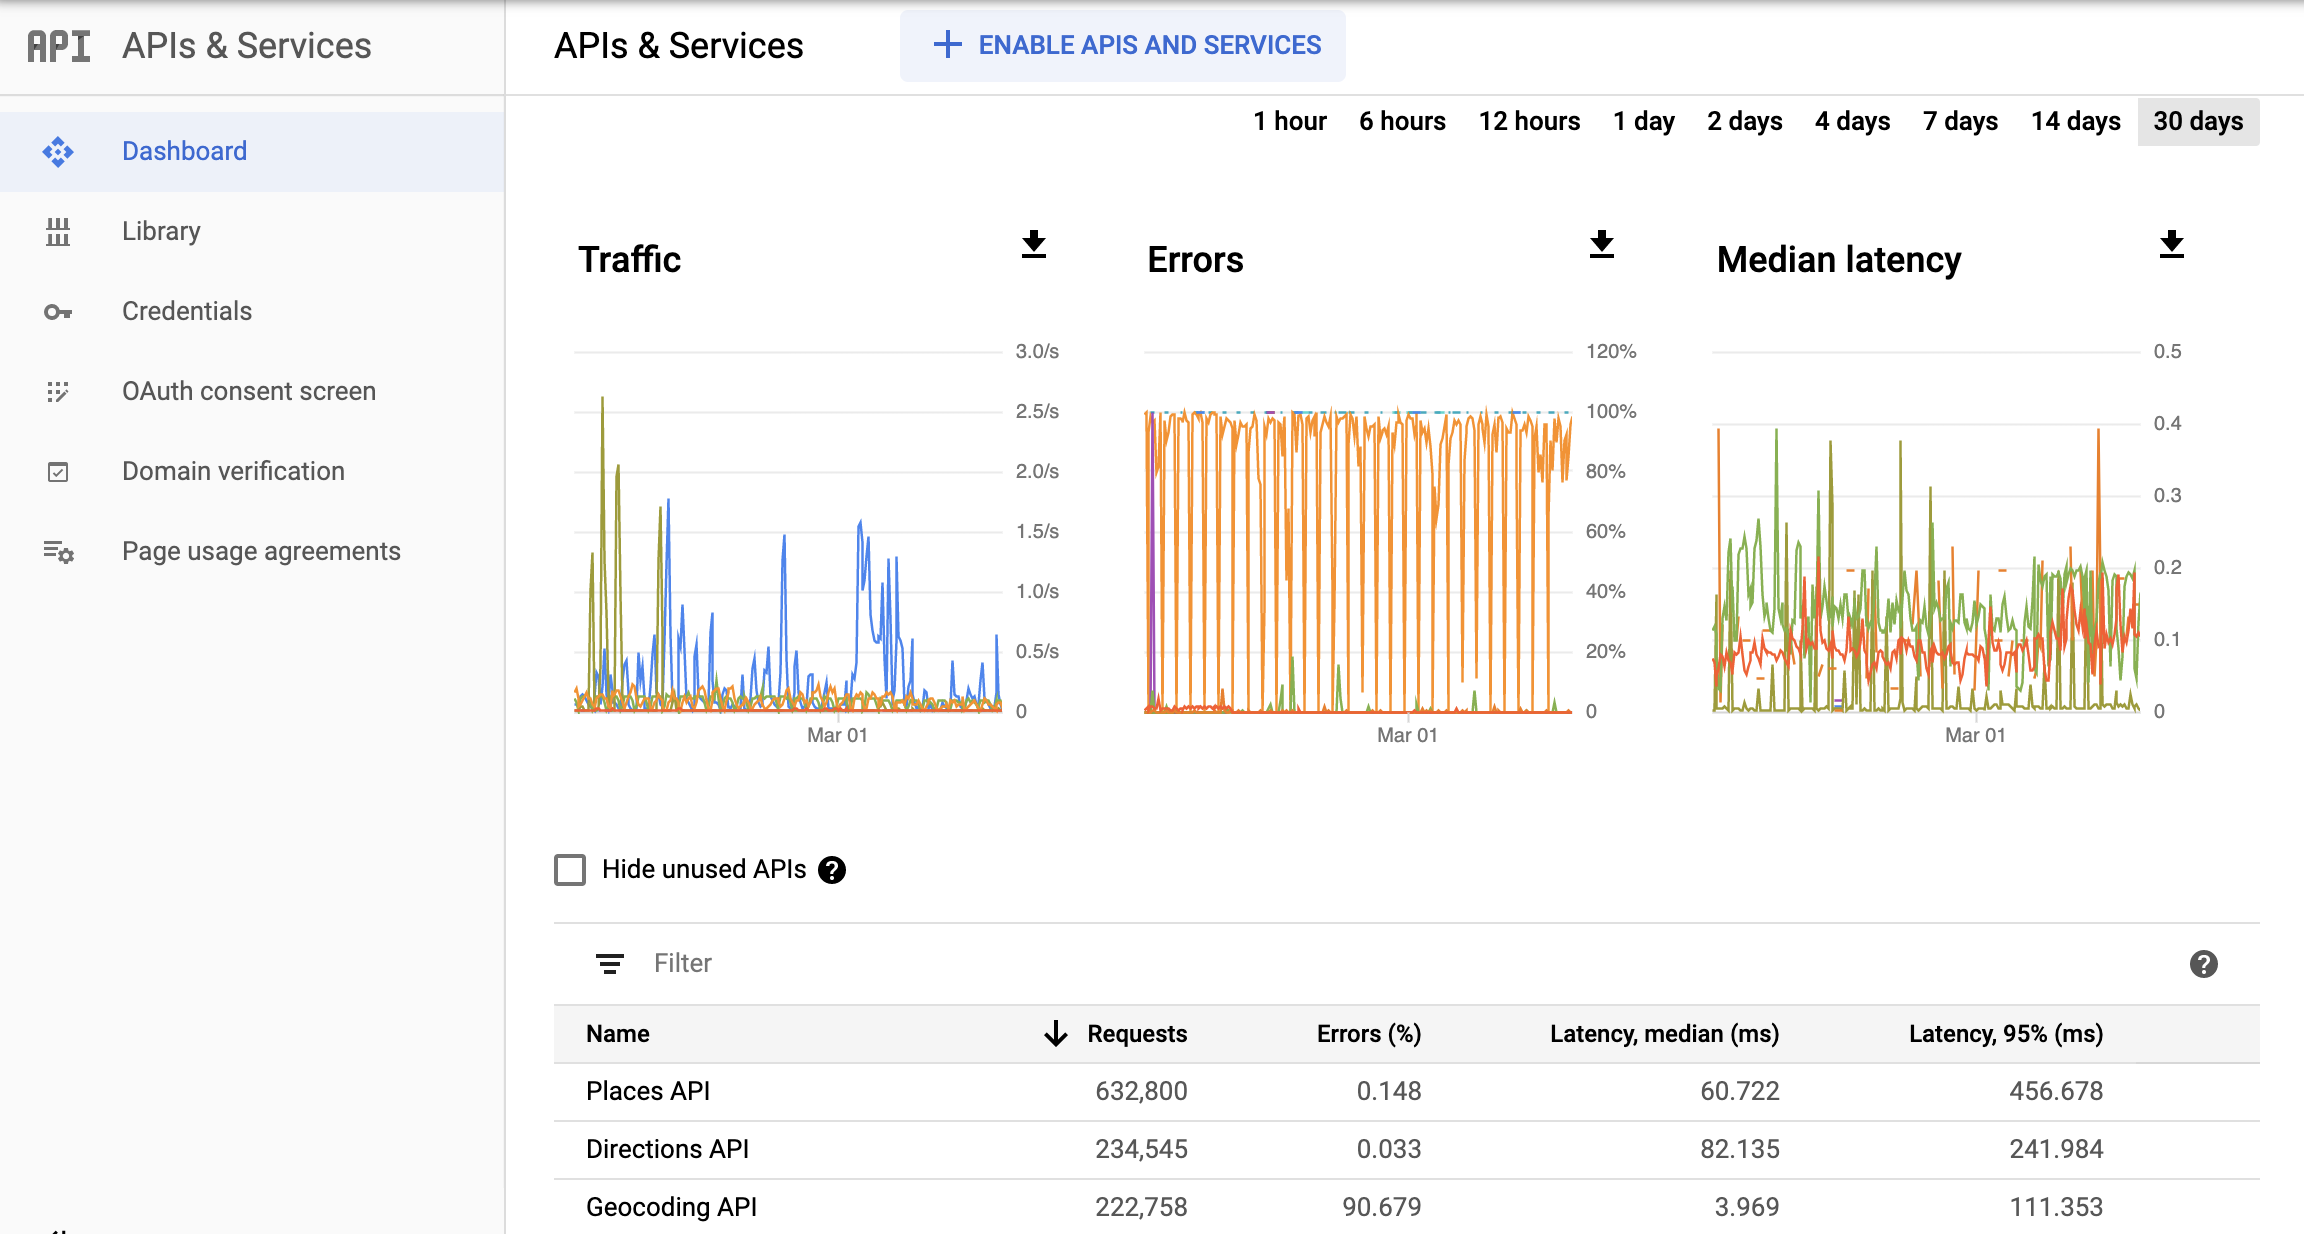 Google Cloud Console 中的 Monitoring API 页面的屏幕截图，显示了“API 和服务”报告的信息中心。其中分别显示了“流量”、“错误”和“延迟时间中位数”图表。这些图表可显示 1 小时到 30 天的数据。